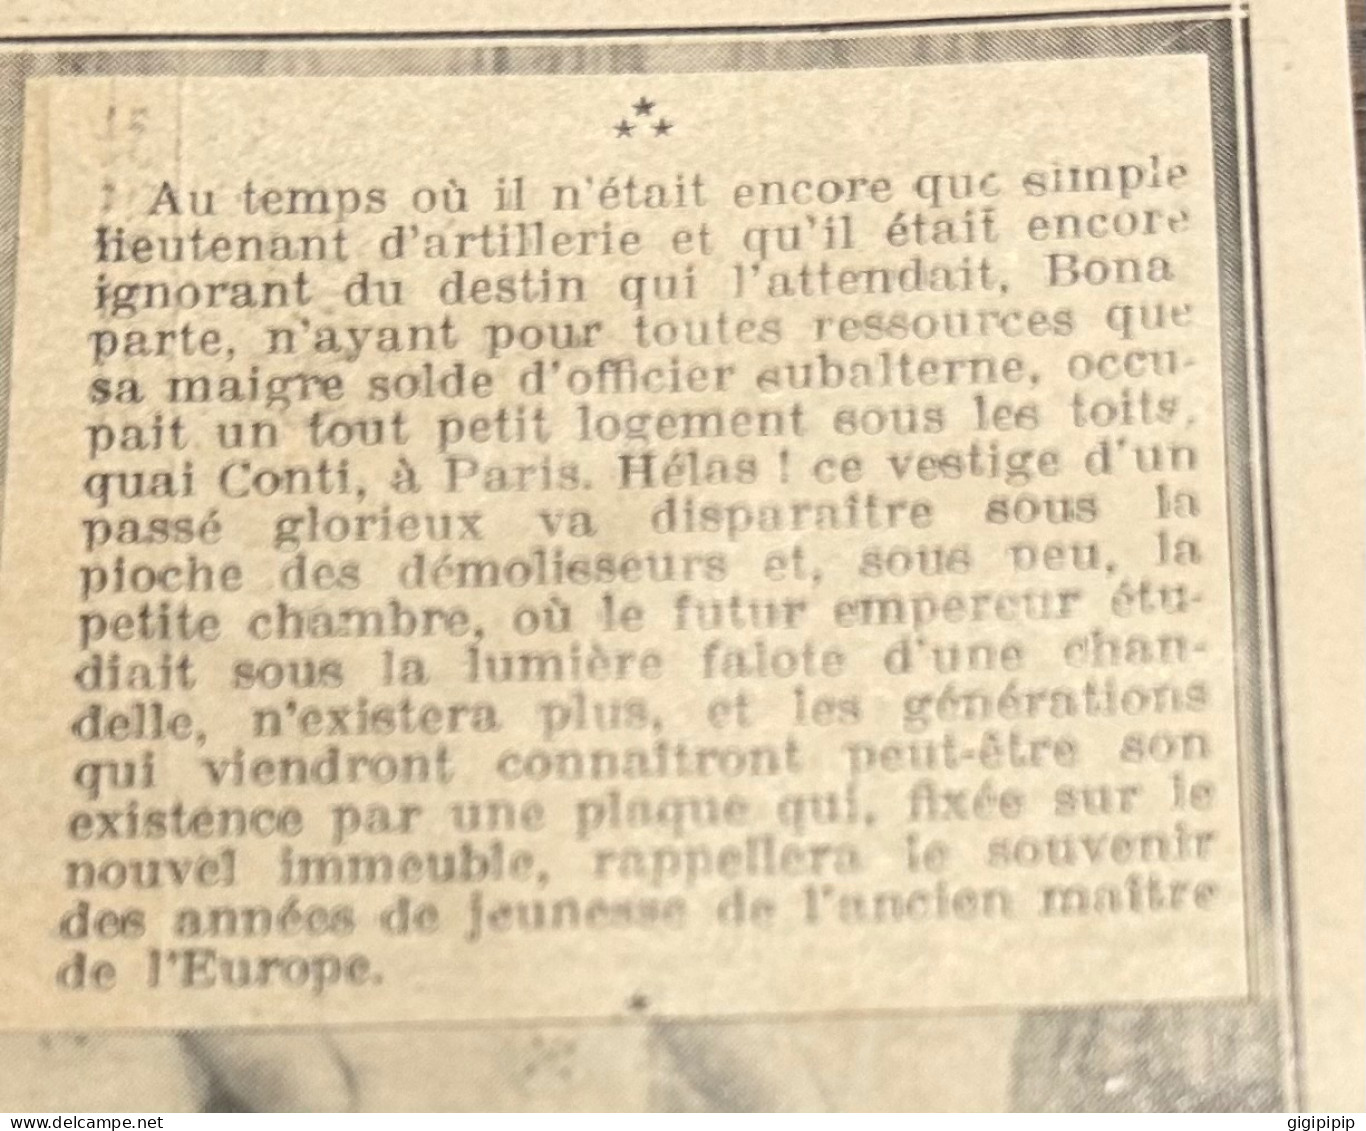 1930 GHI16 MAISON HABITEE PAR NAPOLÉON BONAPARTE QUAND IL ETAIT LIEUTENANT D'ARTILLERIE, A PARIS, QUI VA ETRE DEMOLIE - Sammlungen